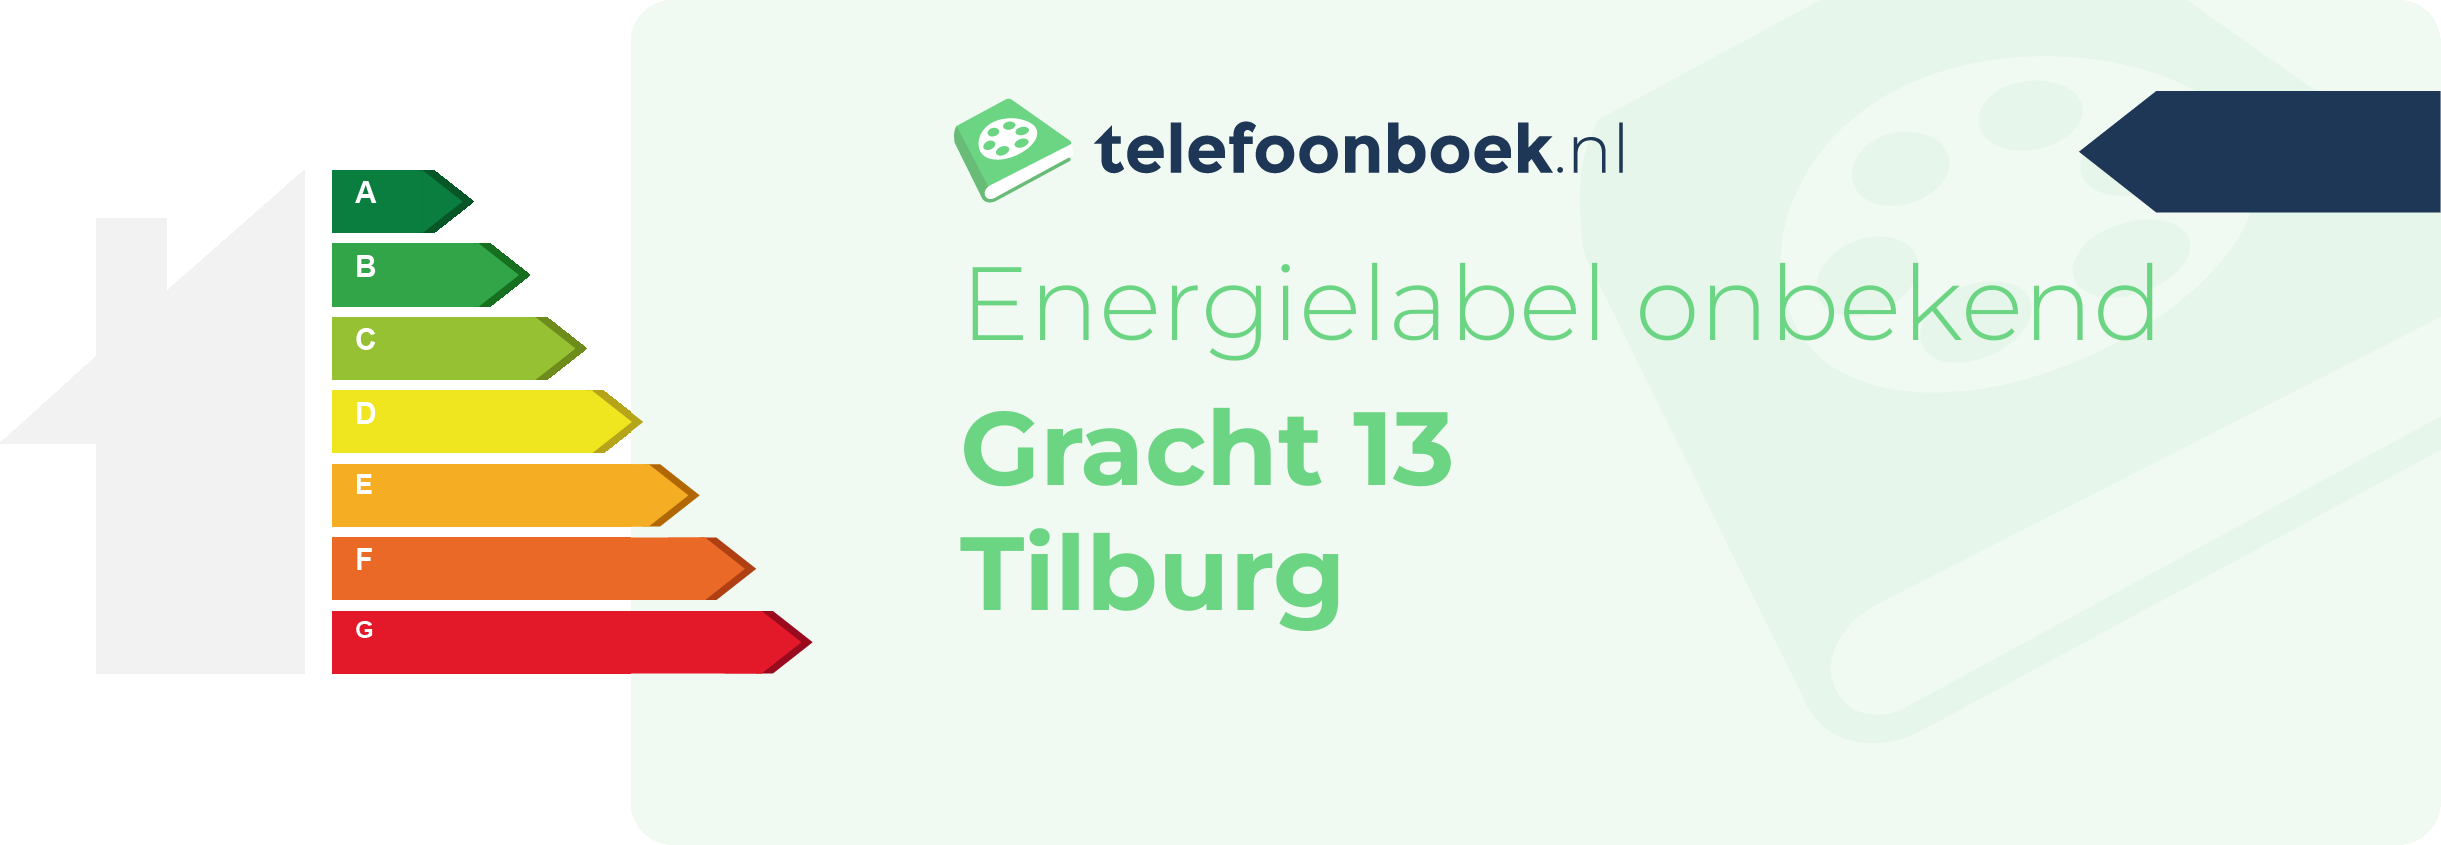 Energielabel Gracht 13 Tilburg